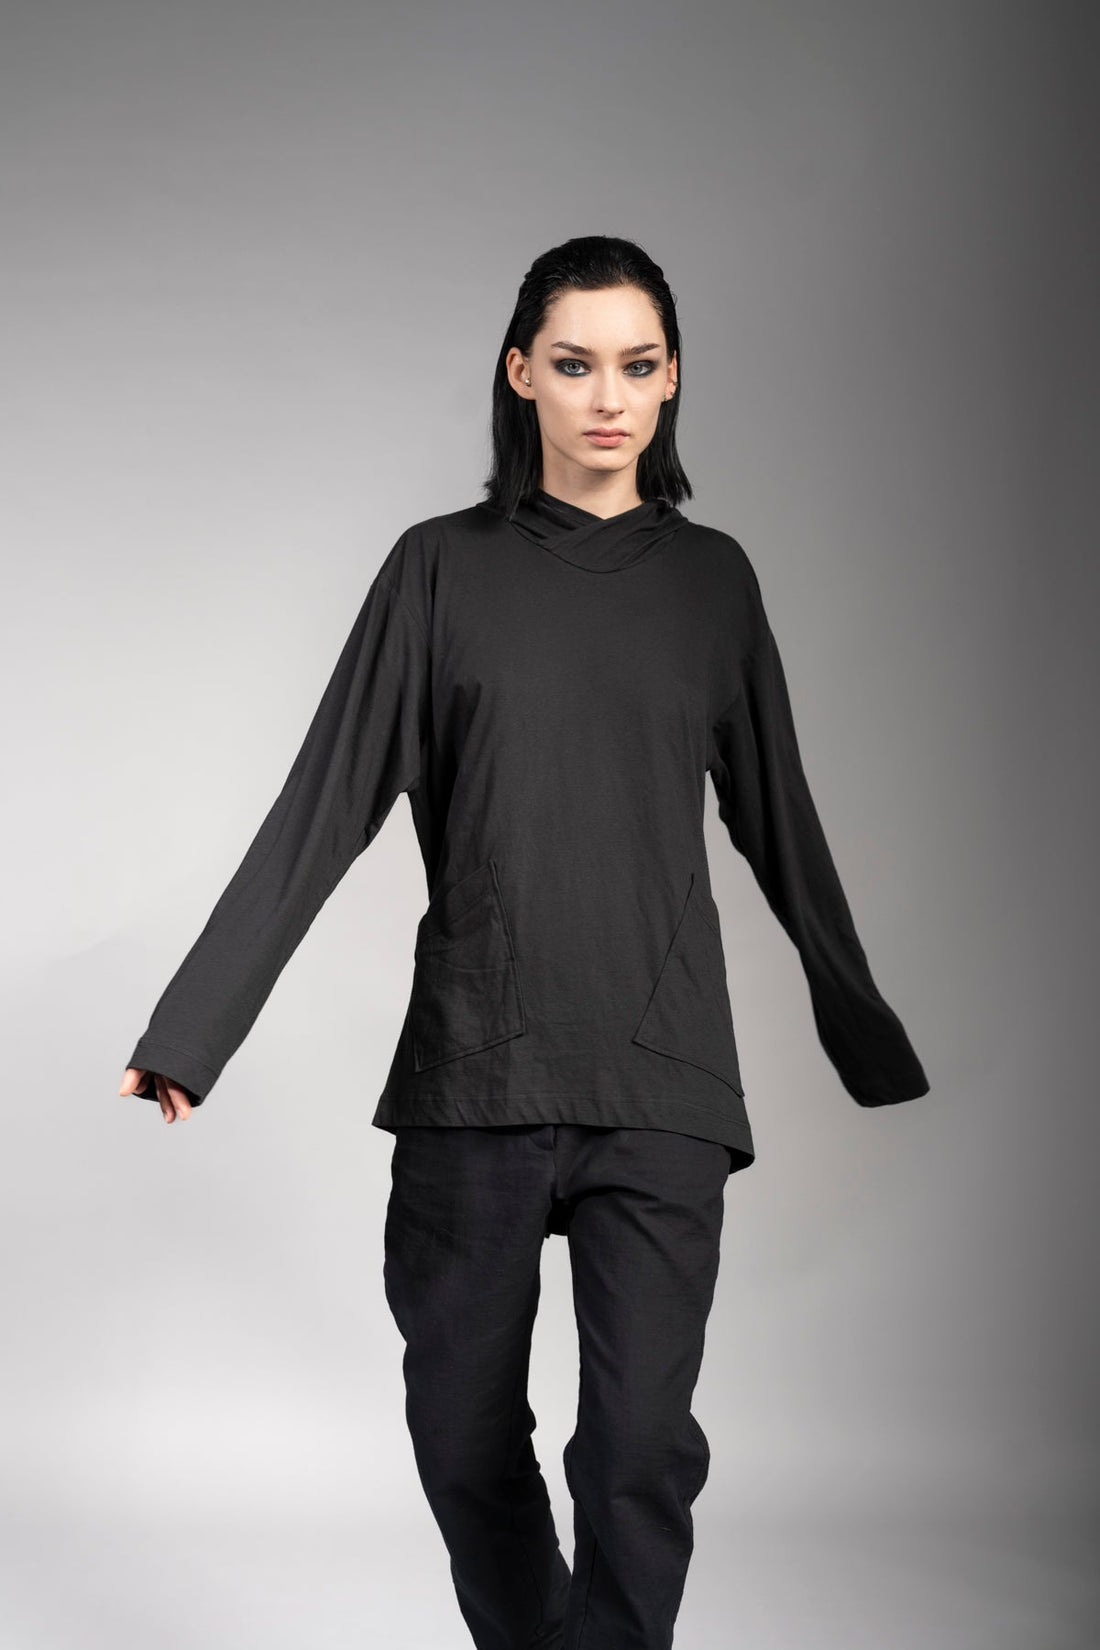 eigensinnig wien | Breed | Schwarzes Designer Hooded Sweatshirt aus Baumwolle